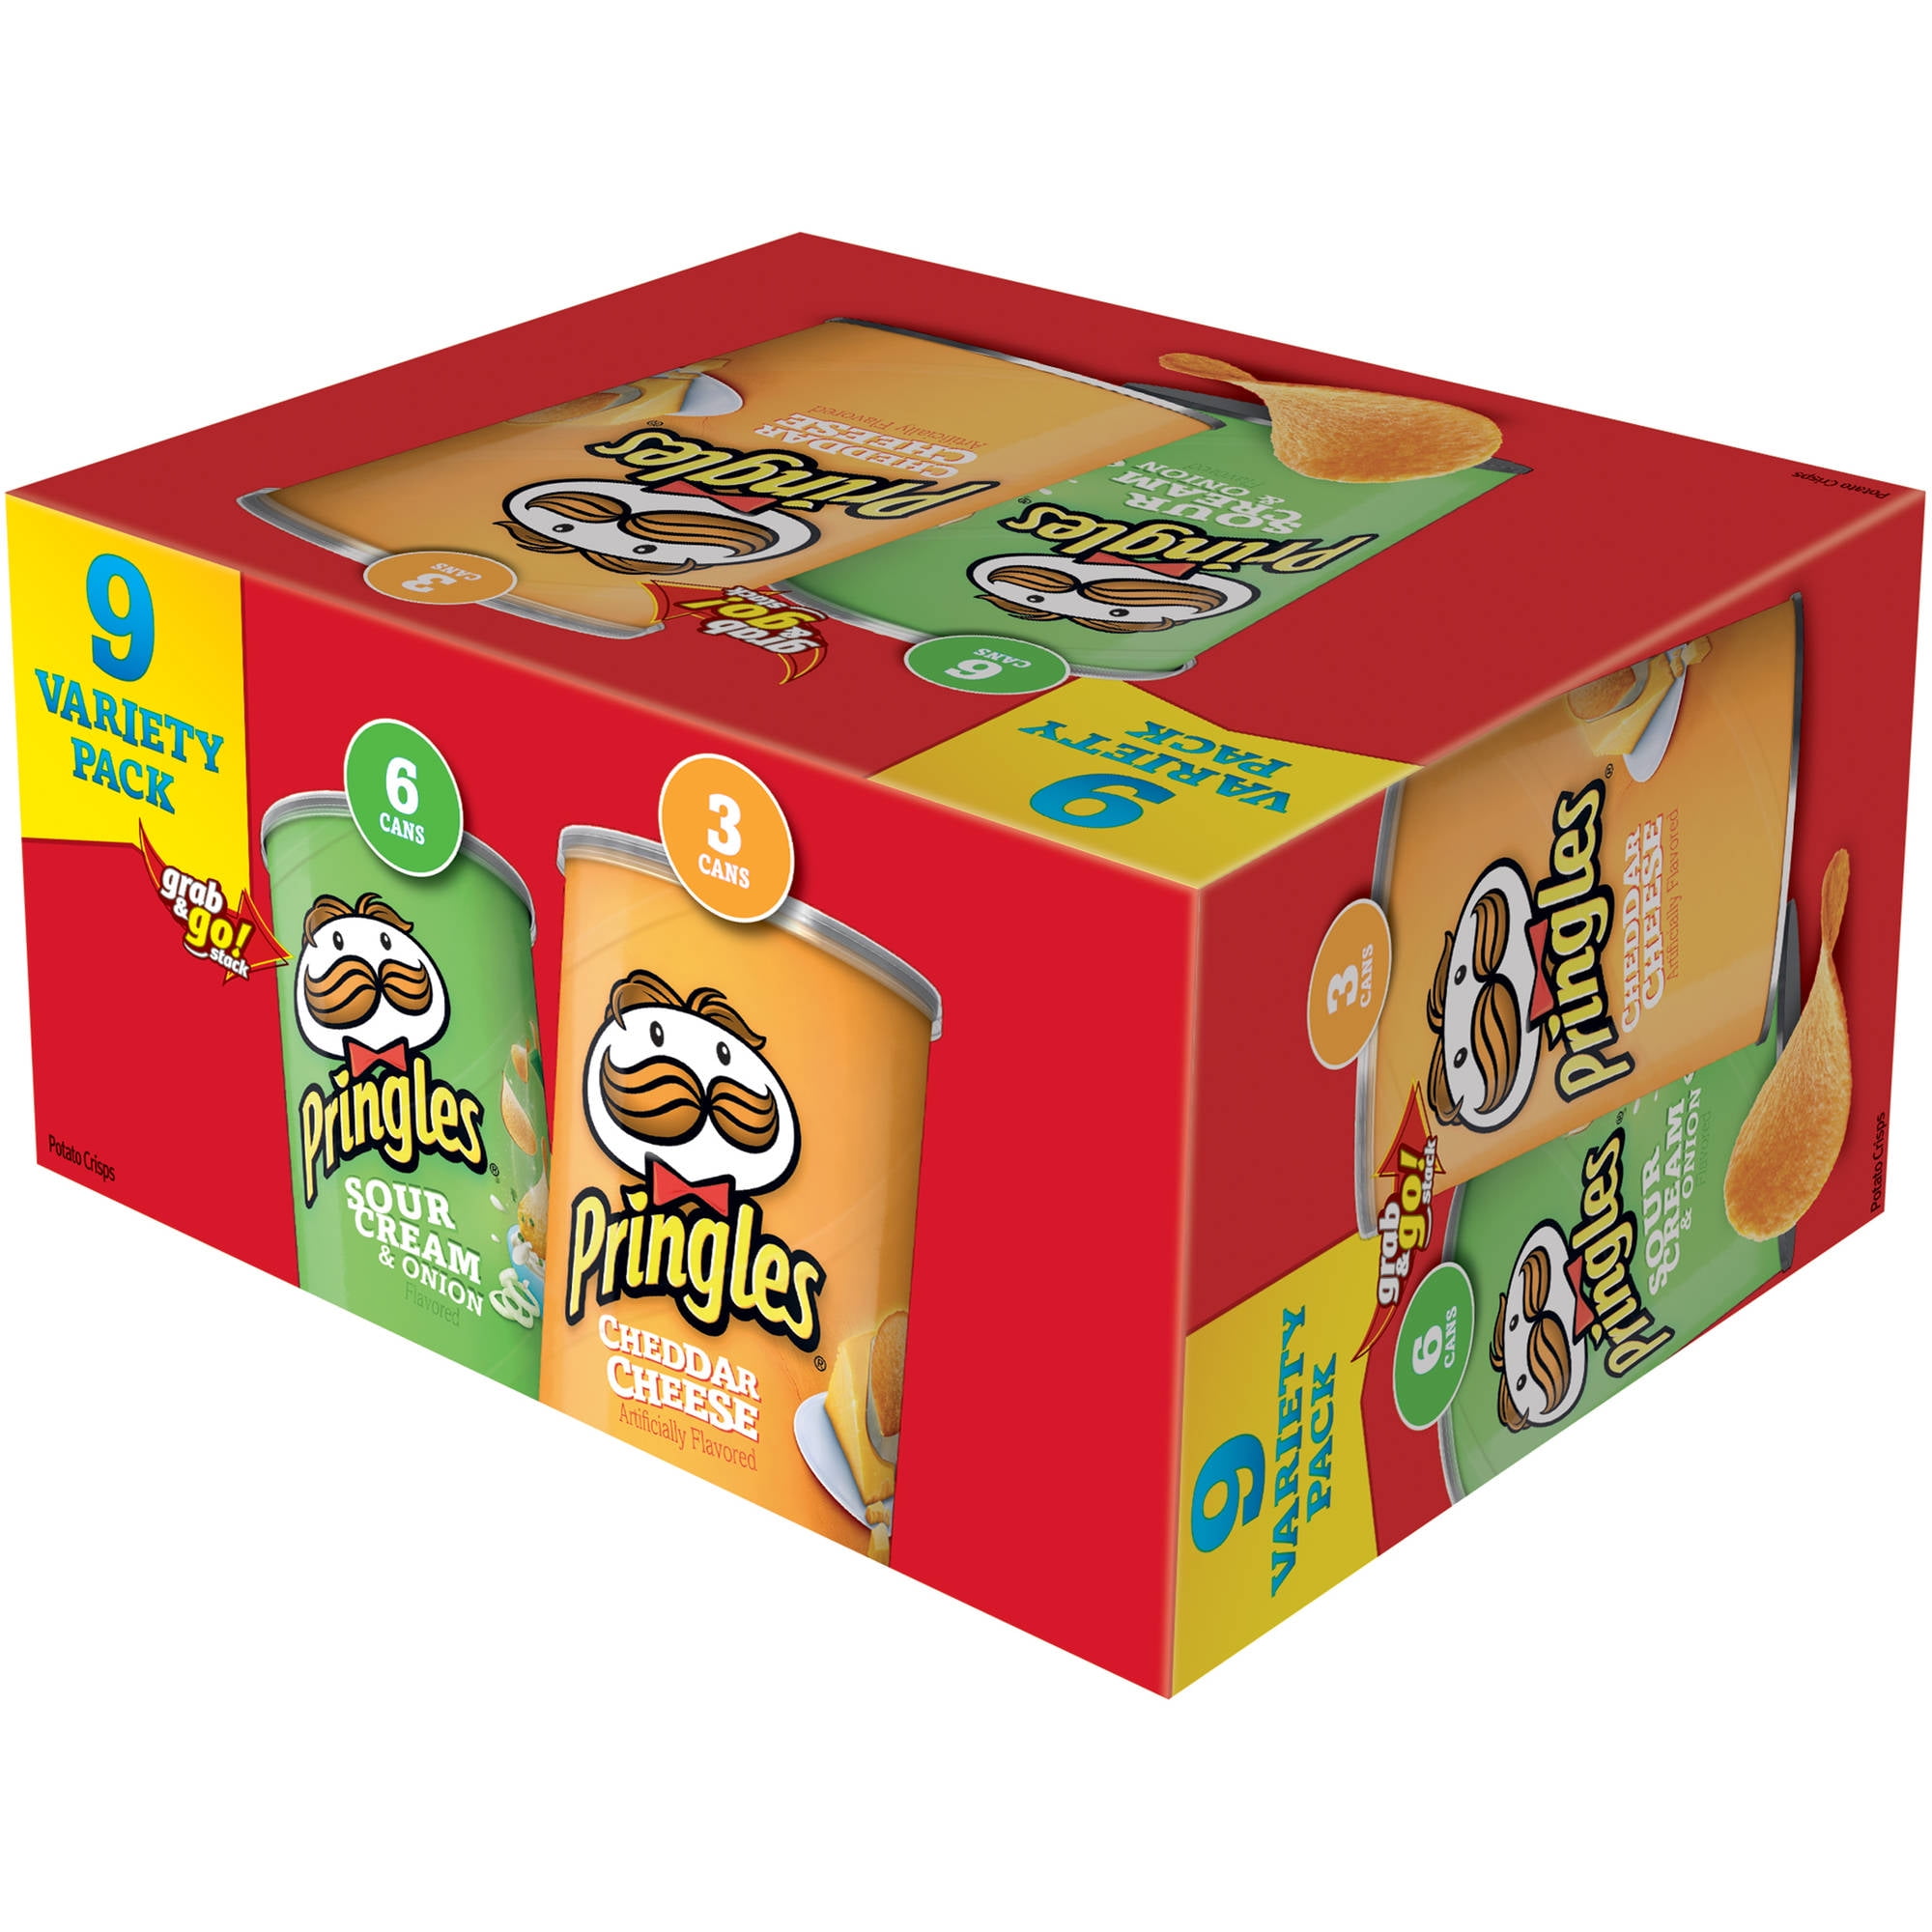 Pringles Snack Stacks! Variety Pack Potato Crisps Chips, 18 ct 13.3 oz ...